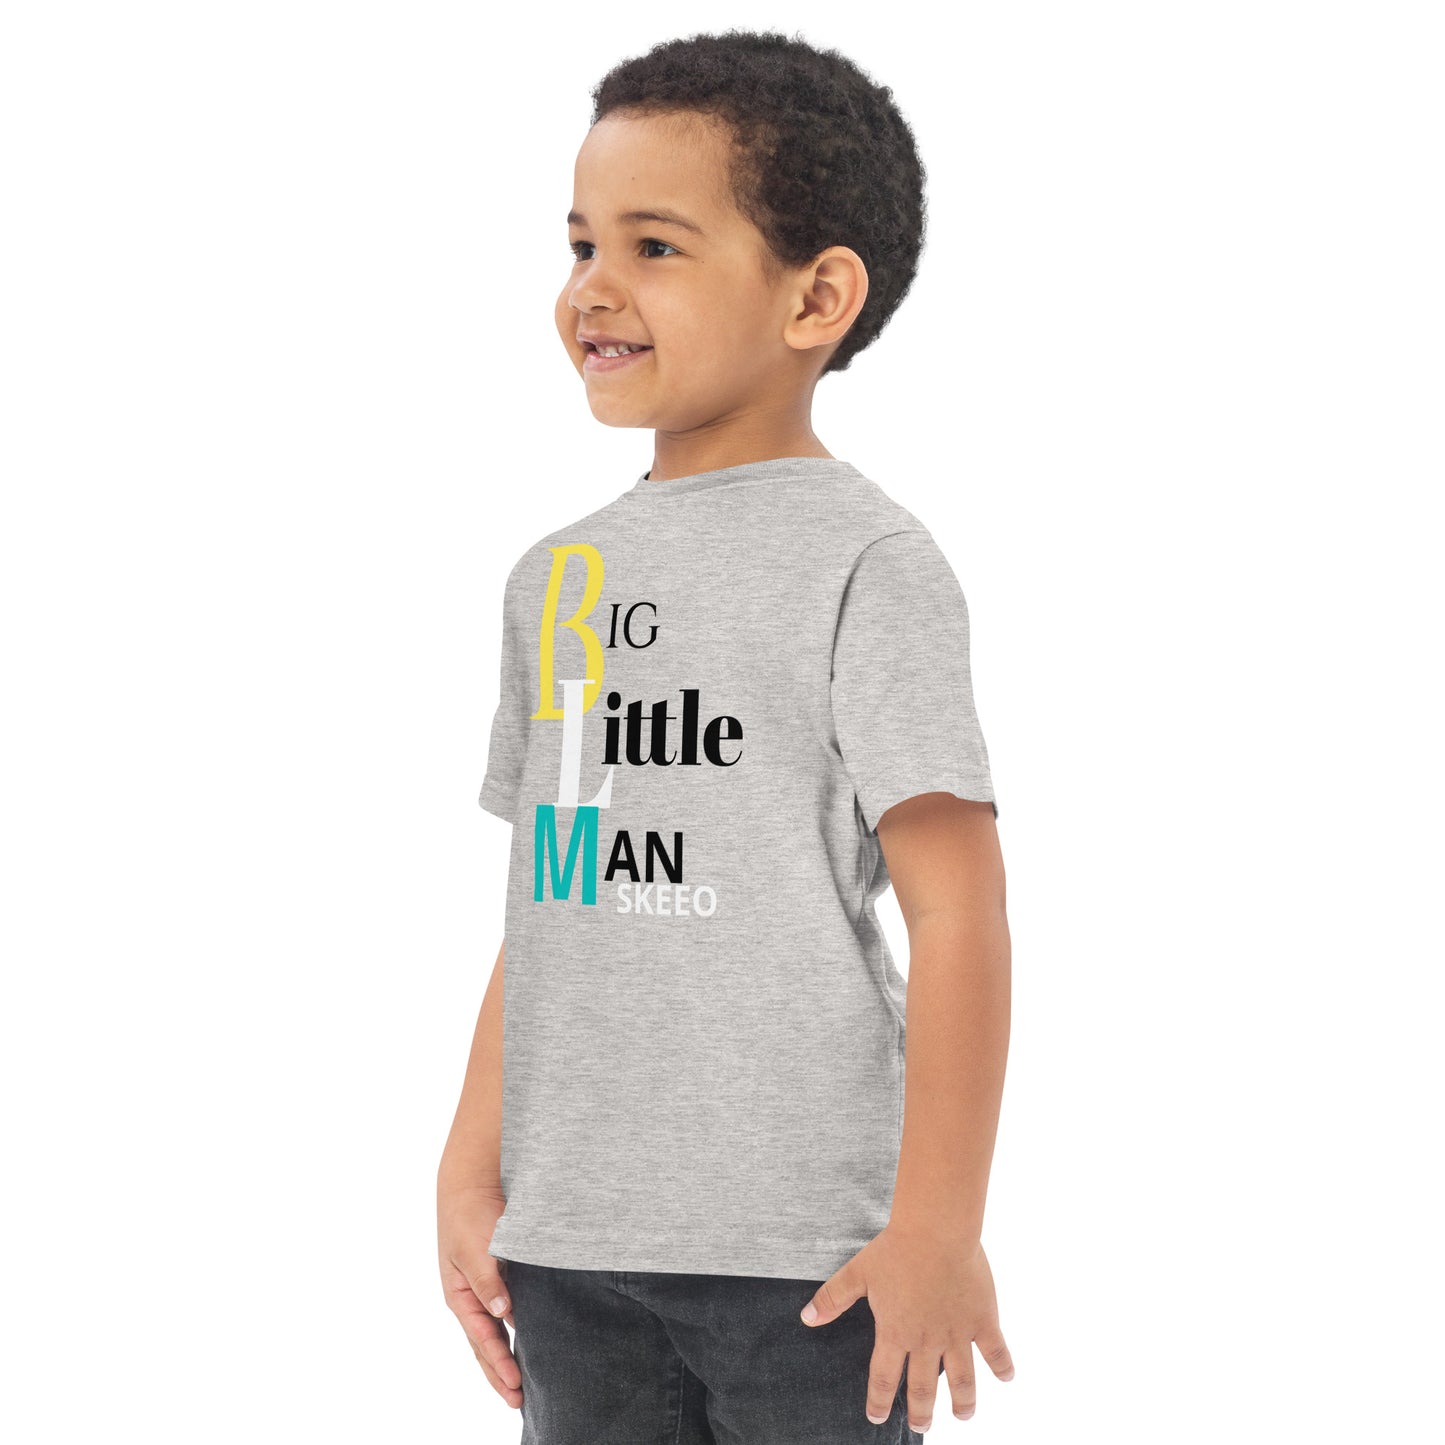 Z Big Little man  jersey t-shirt